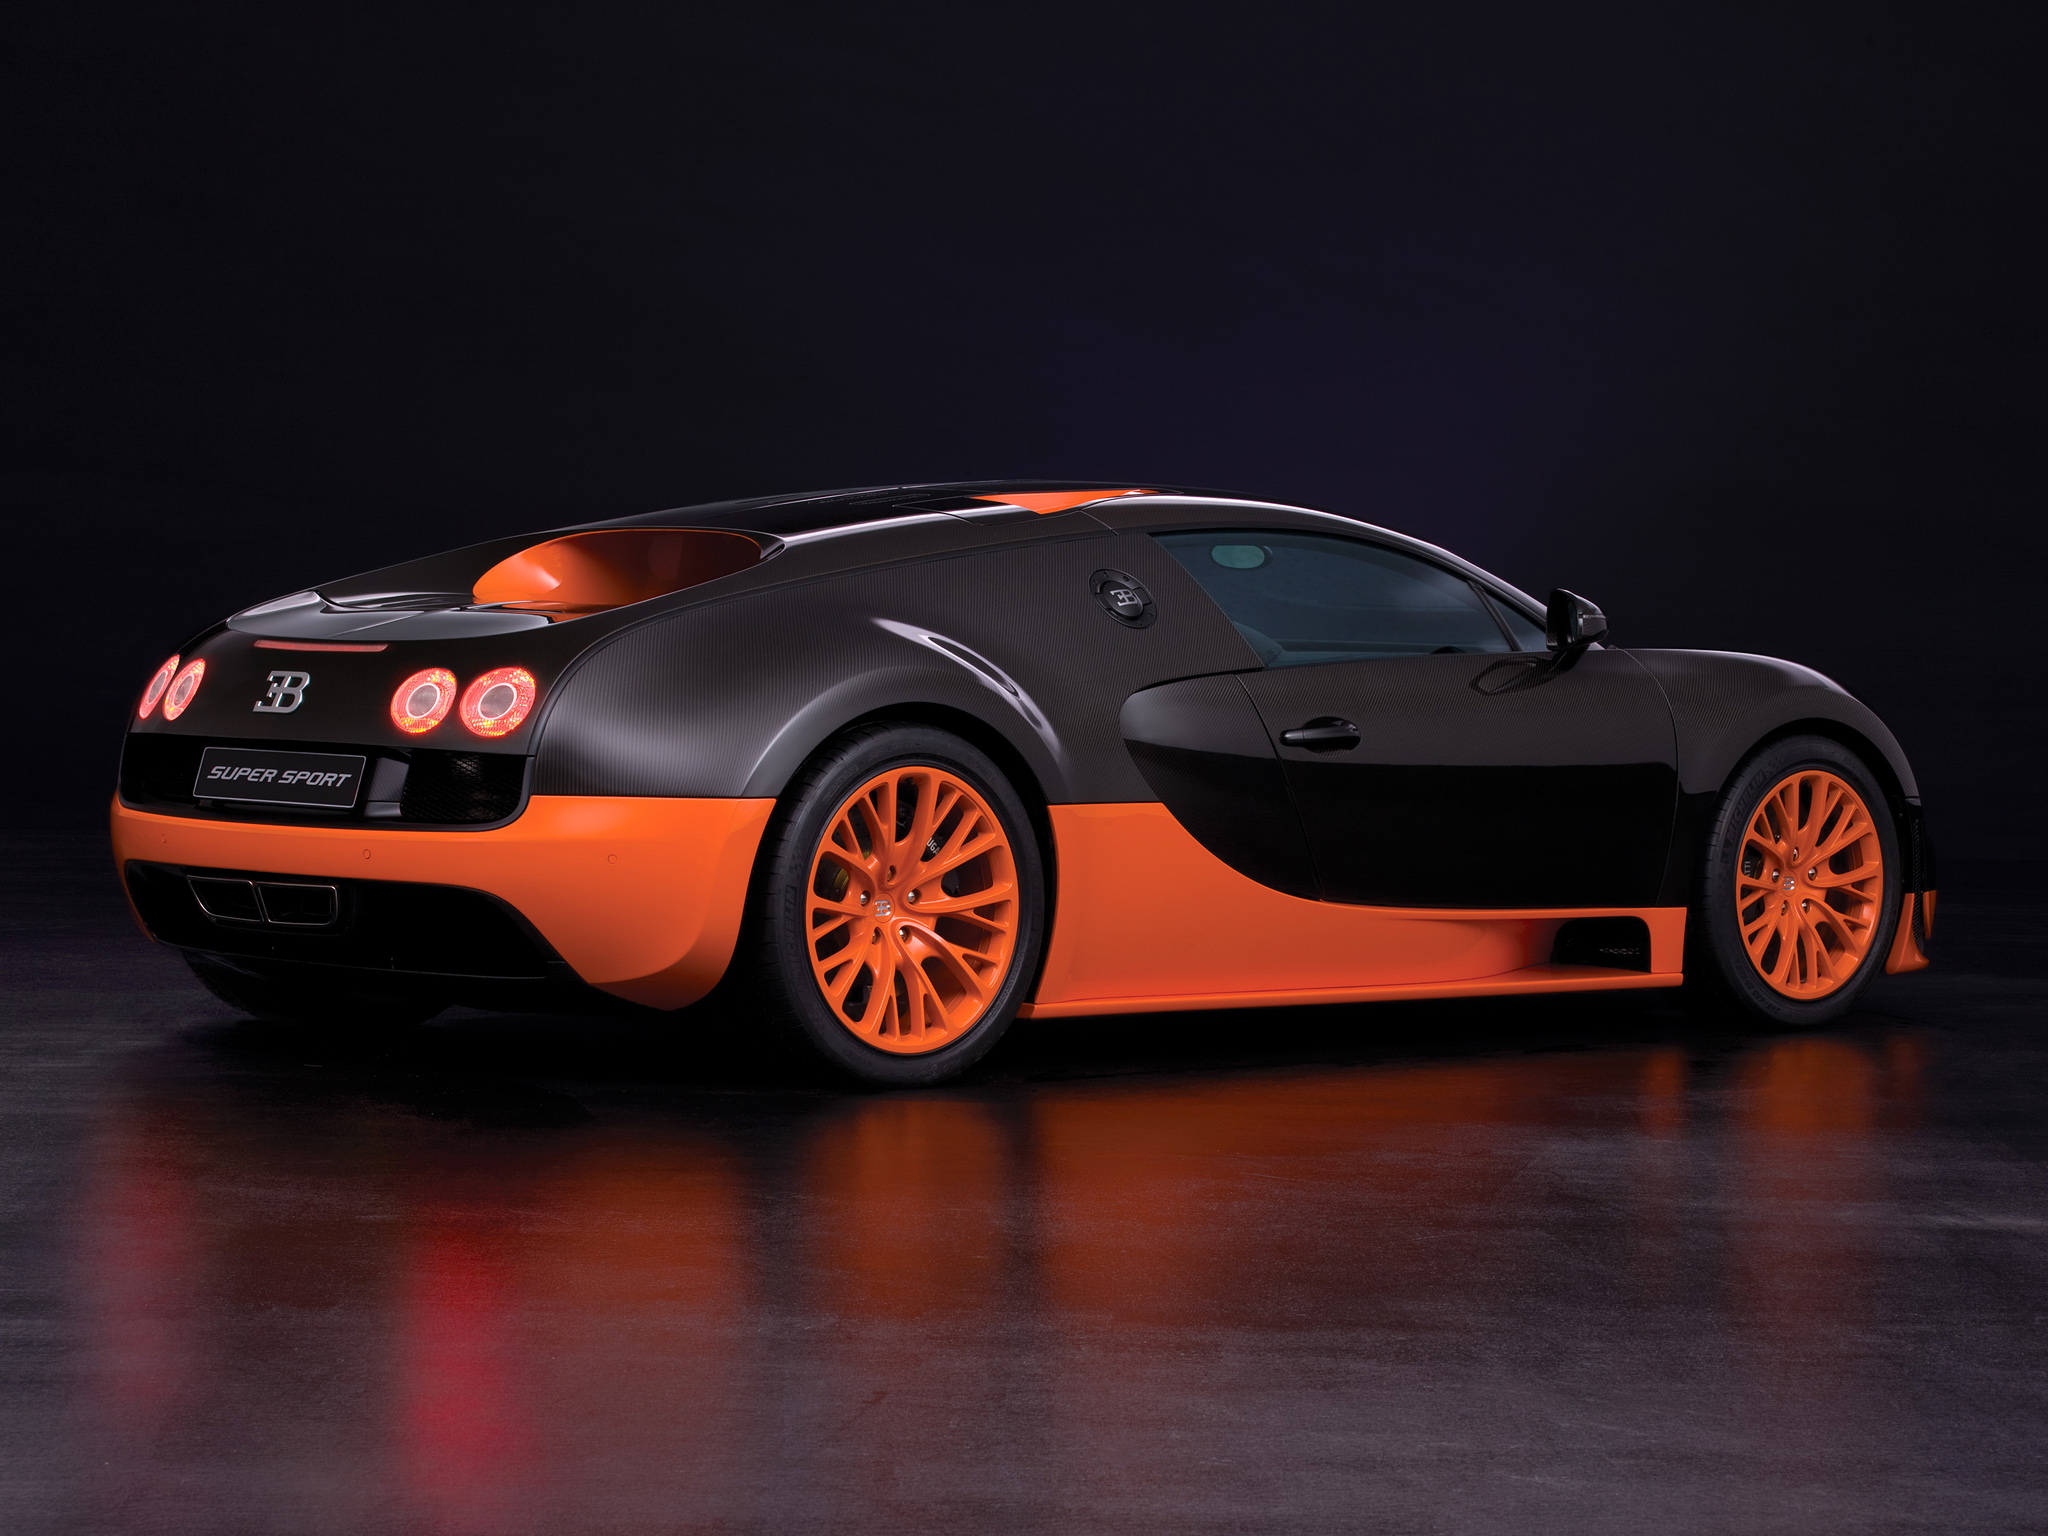 Télécharger des fonds d'écran Bugatti Veyron 16 4 Super Sport HD